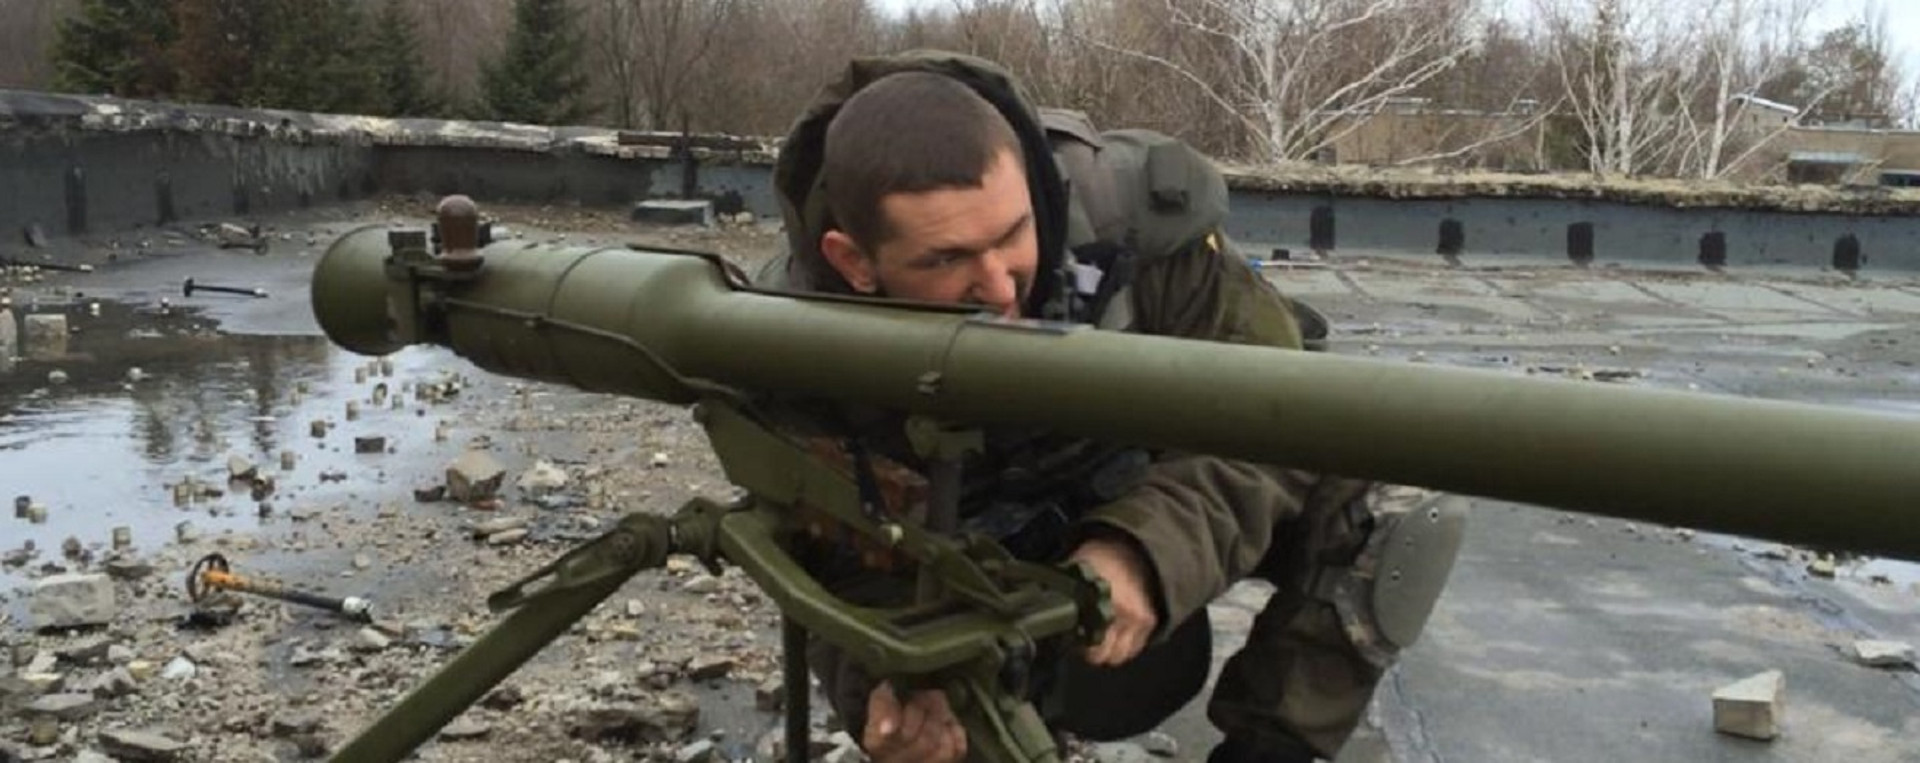 Віктор Пилипенко, батальйон Донбас, гей: По мені стріляли танки, тож зеленки не боюся